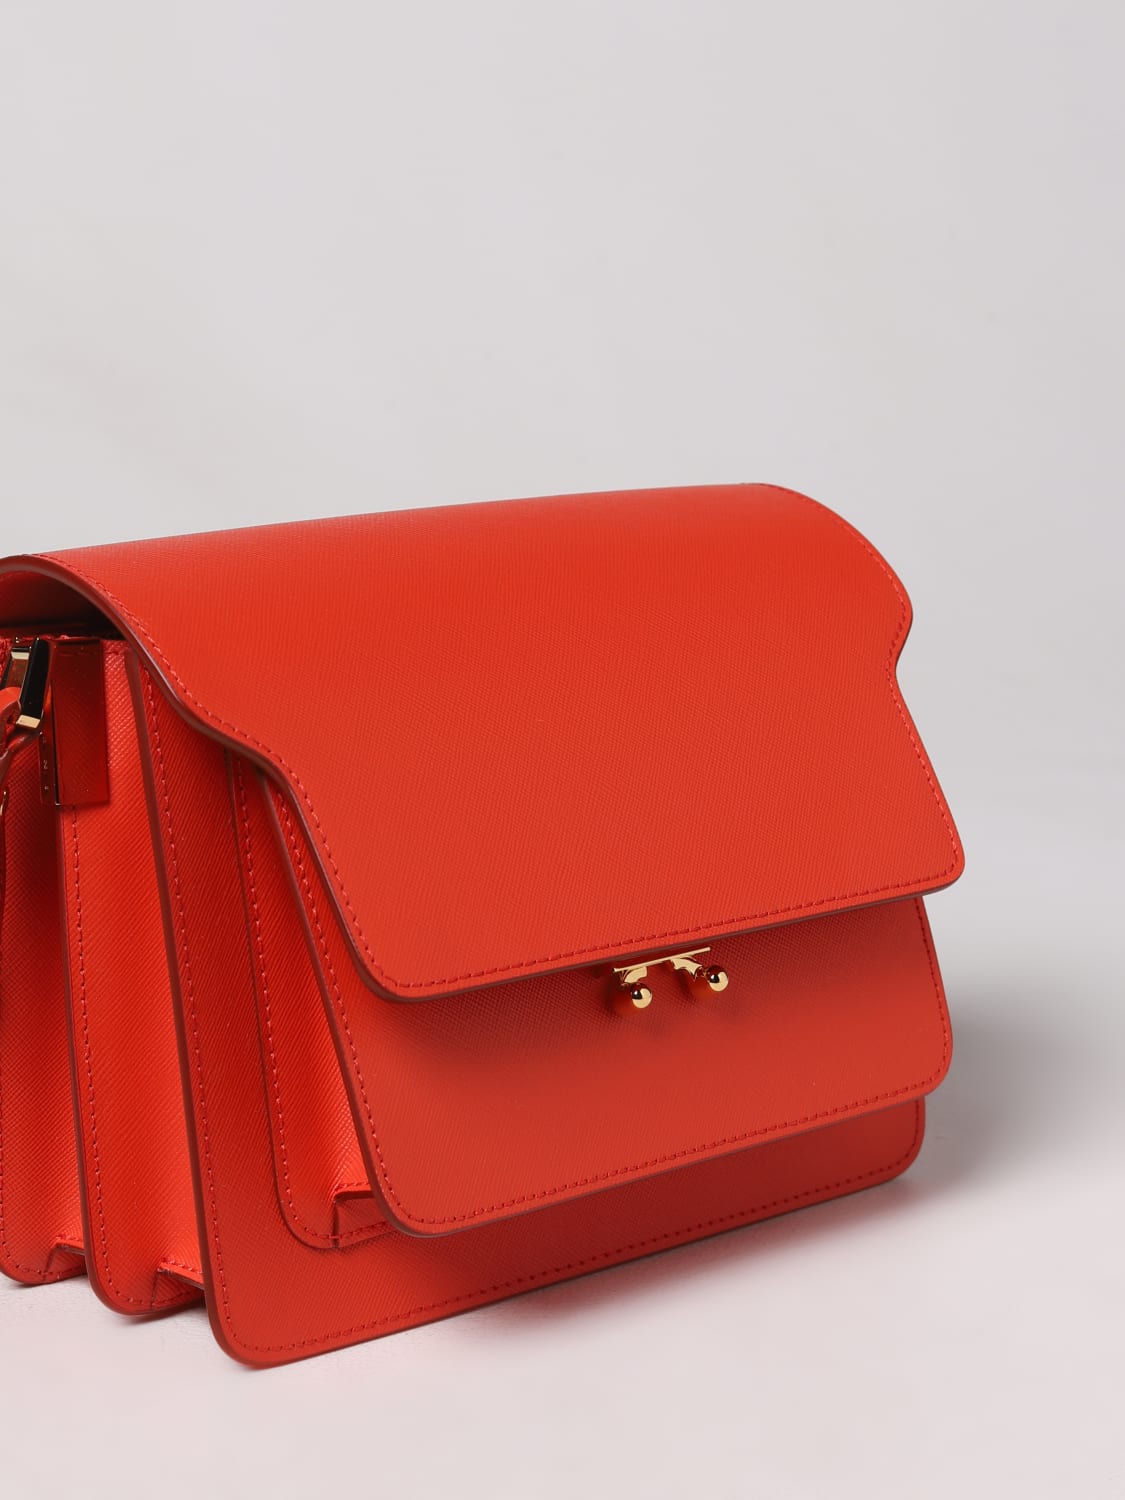 MARNI: bag in saffiano - Red | Marni shoulder bag SBMPN09U07LV520 online